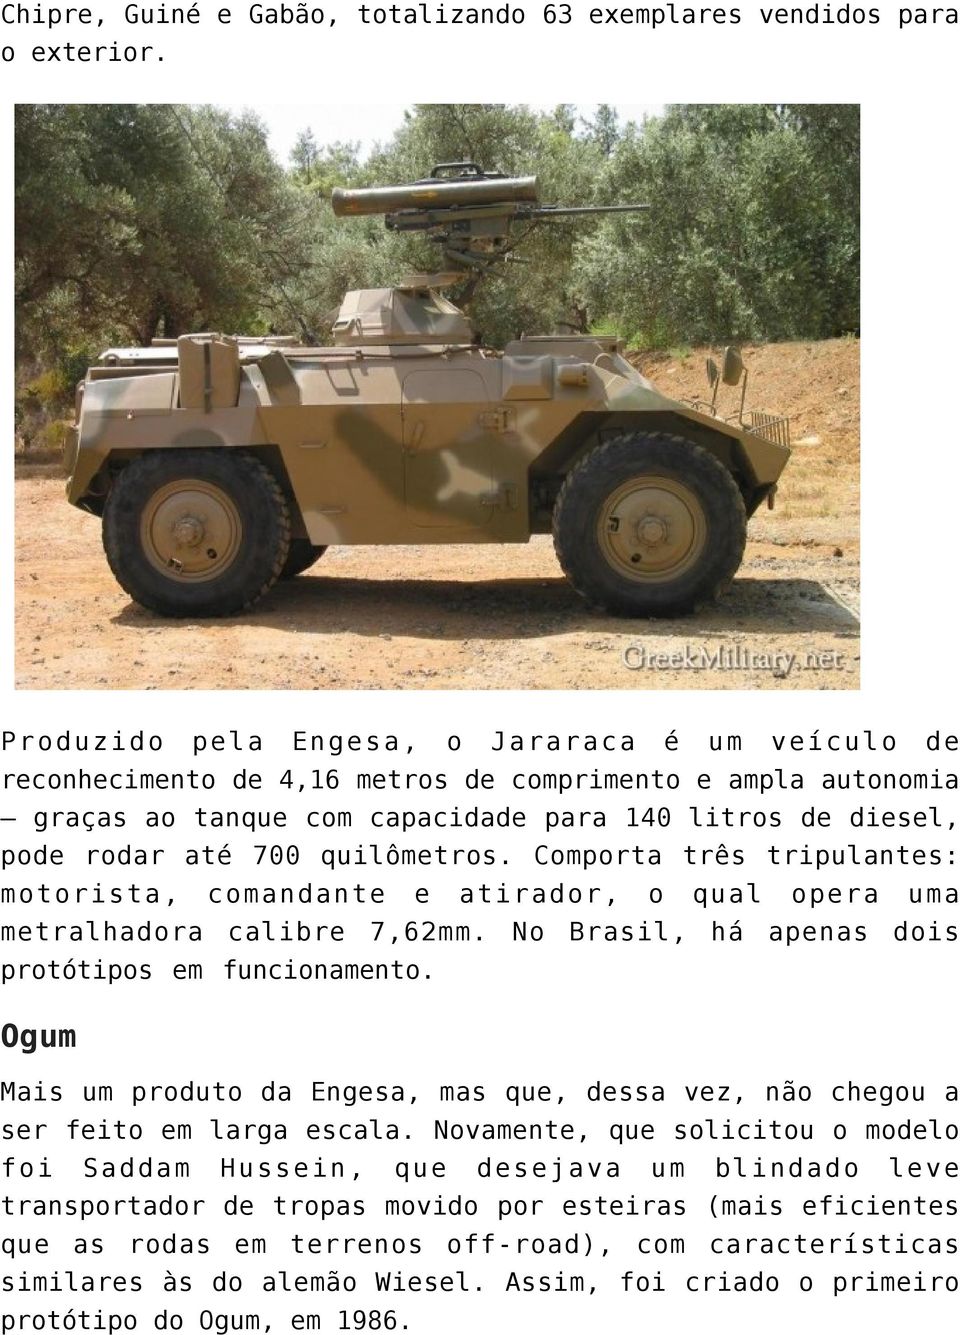 quilômetros. Comporta três tripulantes: motorista, comandante e atirador, o qual opera uma metralhadora calibre 7,62mm. No Brasil, há apenas dois protótipos em funcionamento.